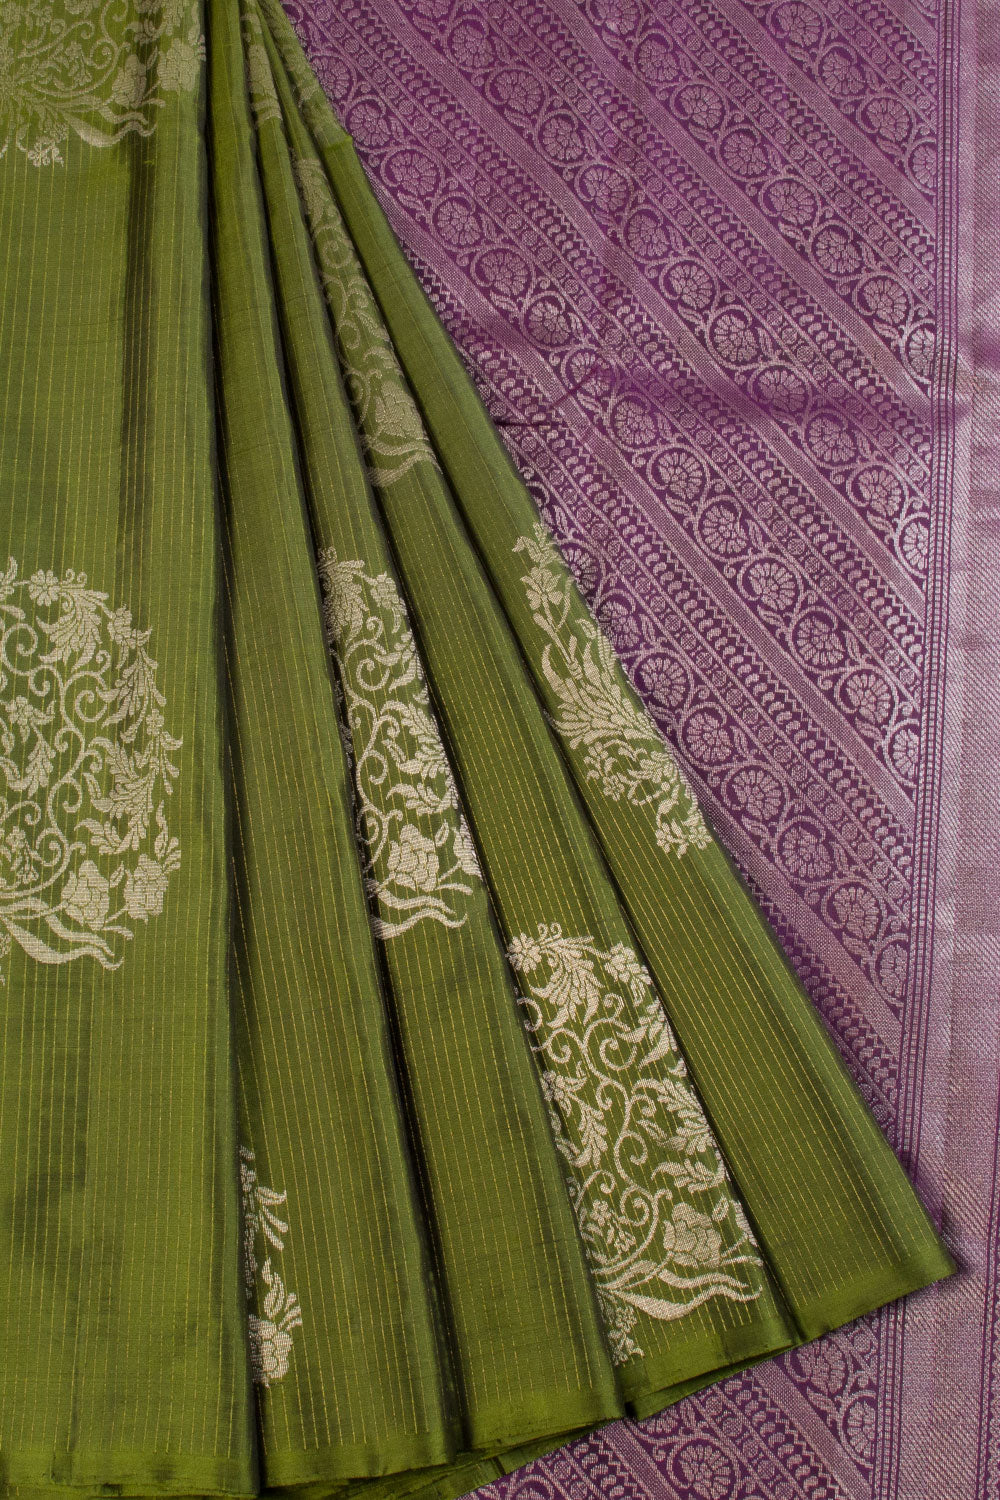 Handloom ikkat kanchi Pattu sarees | Cotton saree designs, Latest saree  blouses, Silk sarees with price